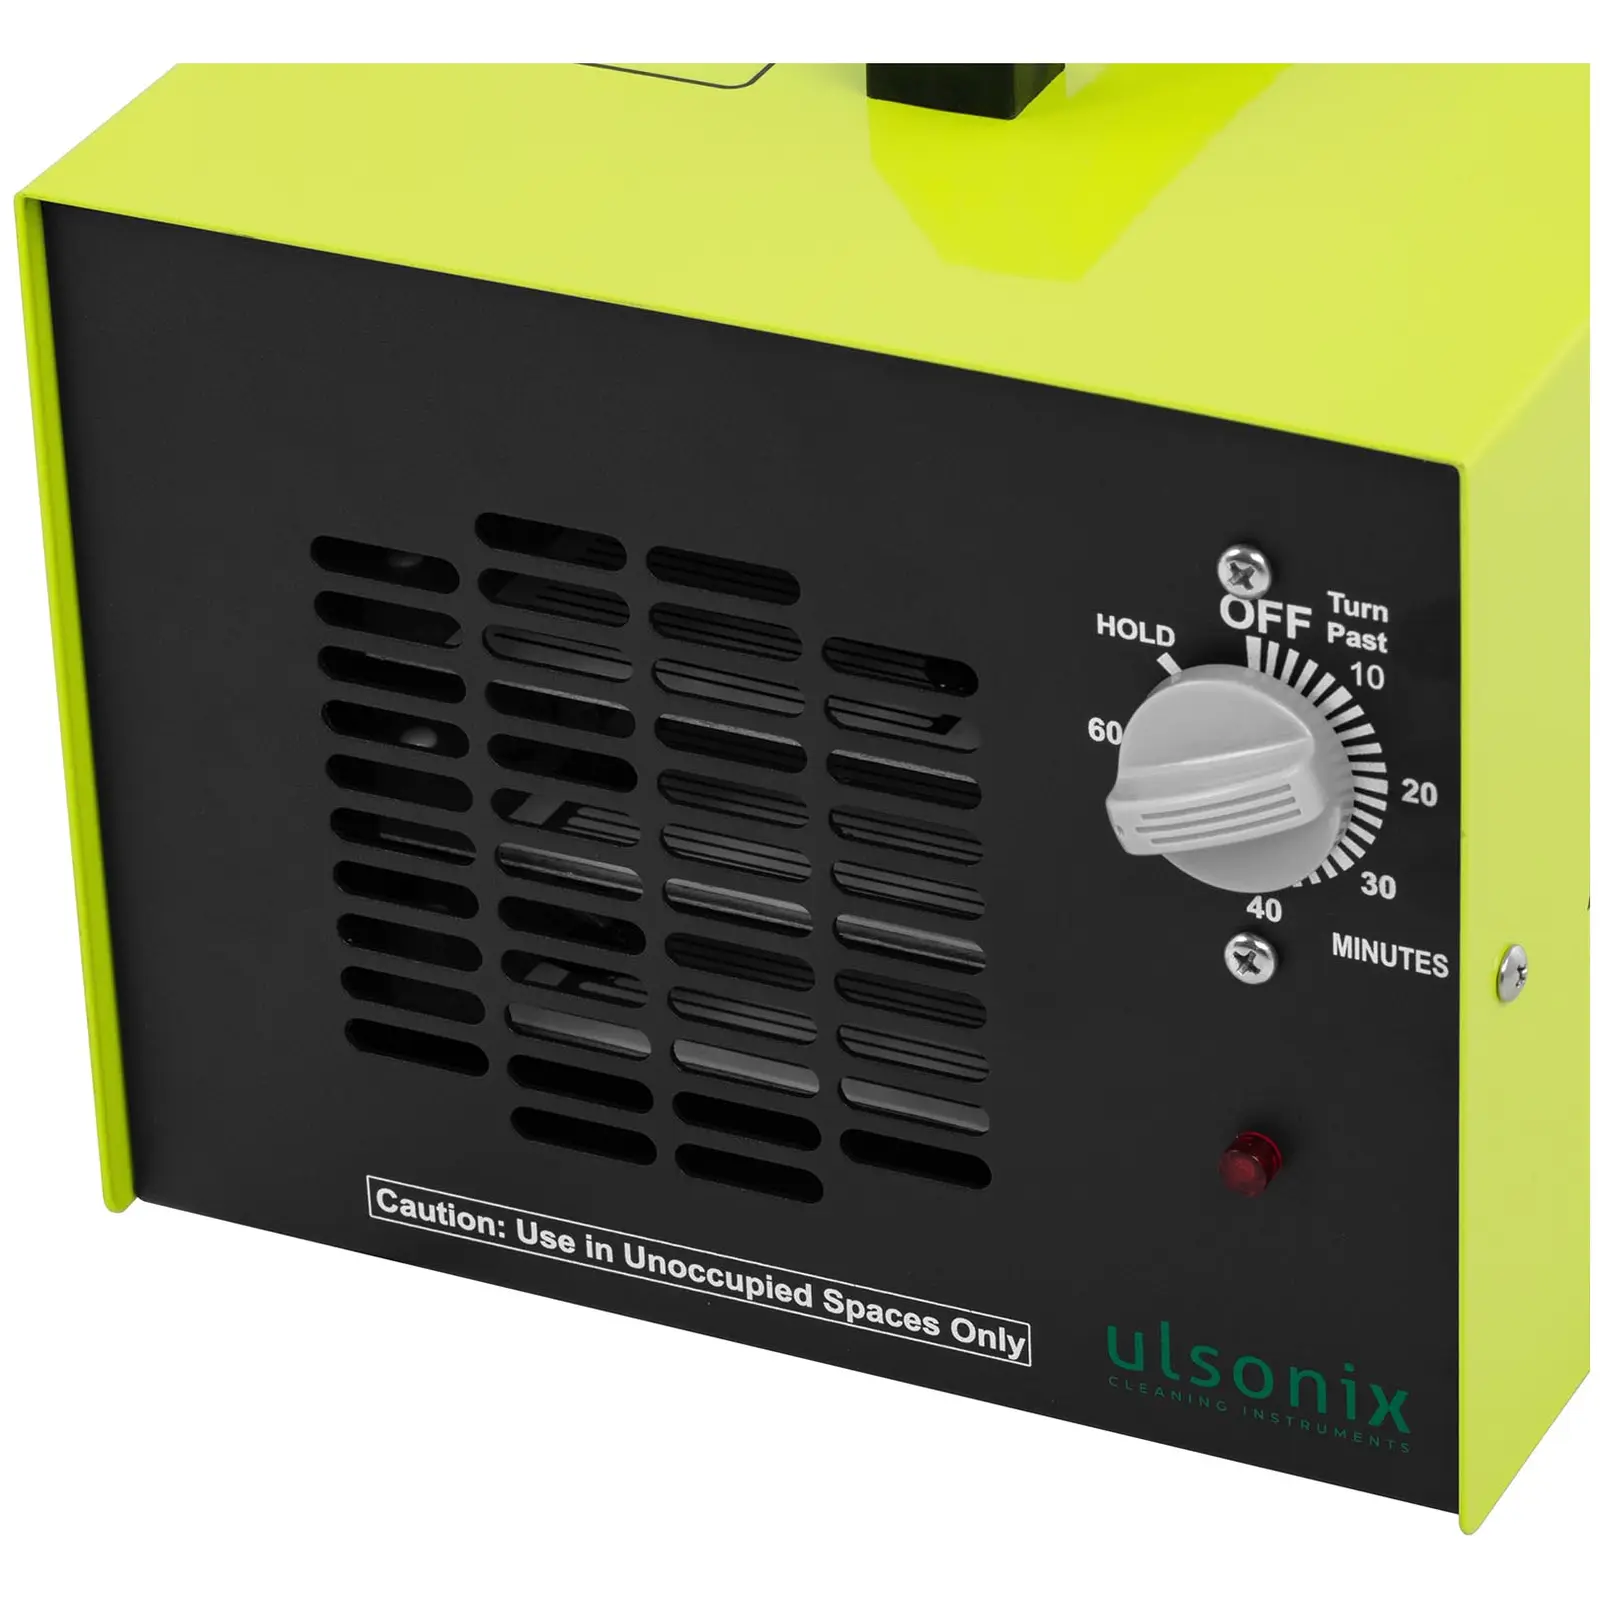 Générateur d’ozone - 7 000 mg/h - 98 W